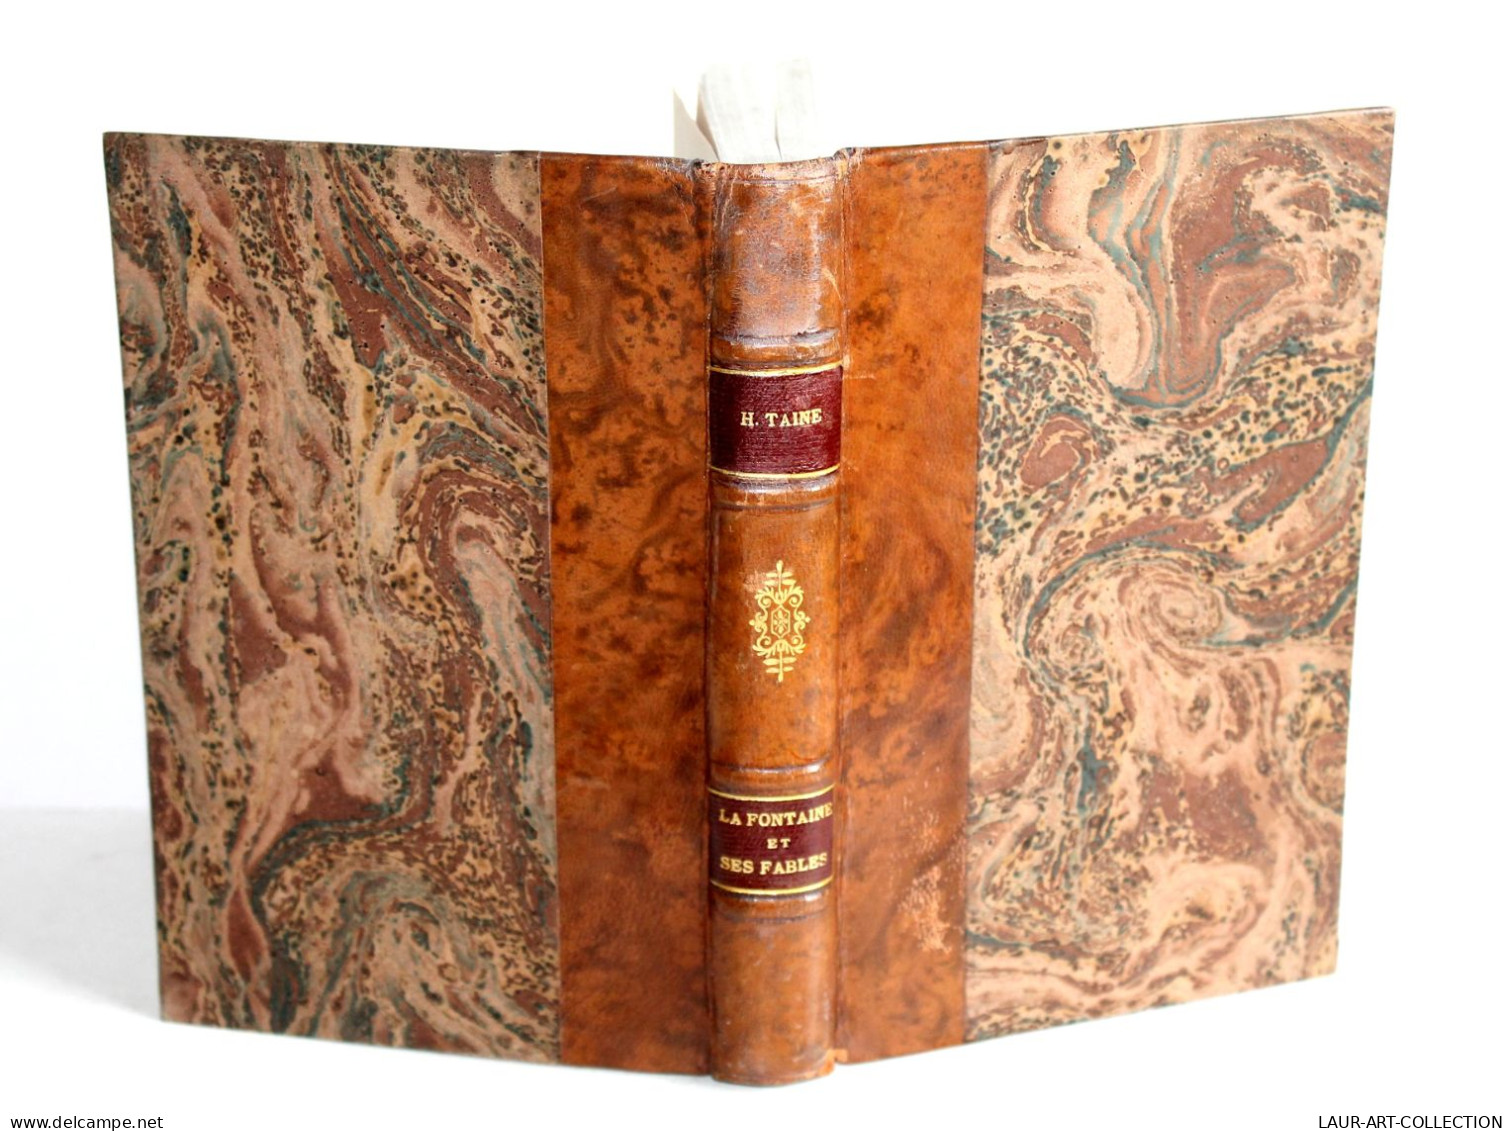 LA FONTAINE ET SES FABLES Par H. TAINE, 7e EDITION 1879 LIBRAIRIE HACHETTE & Cie, LIVRE ANCIEN XIXe SIECLE (2204.77) - 1801-1900